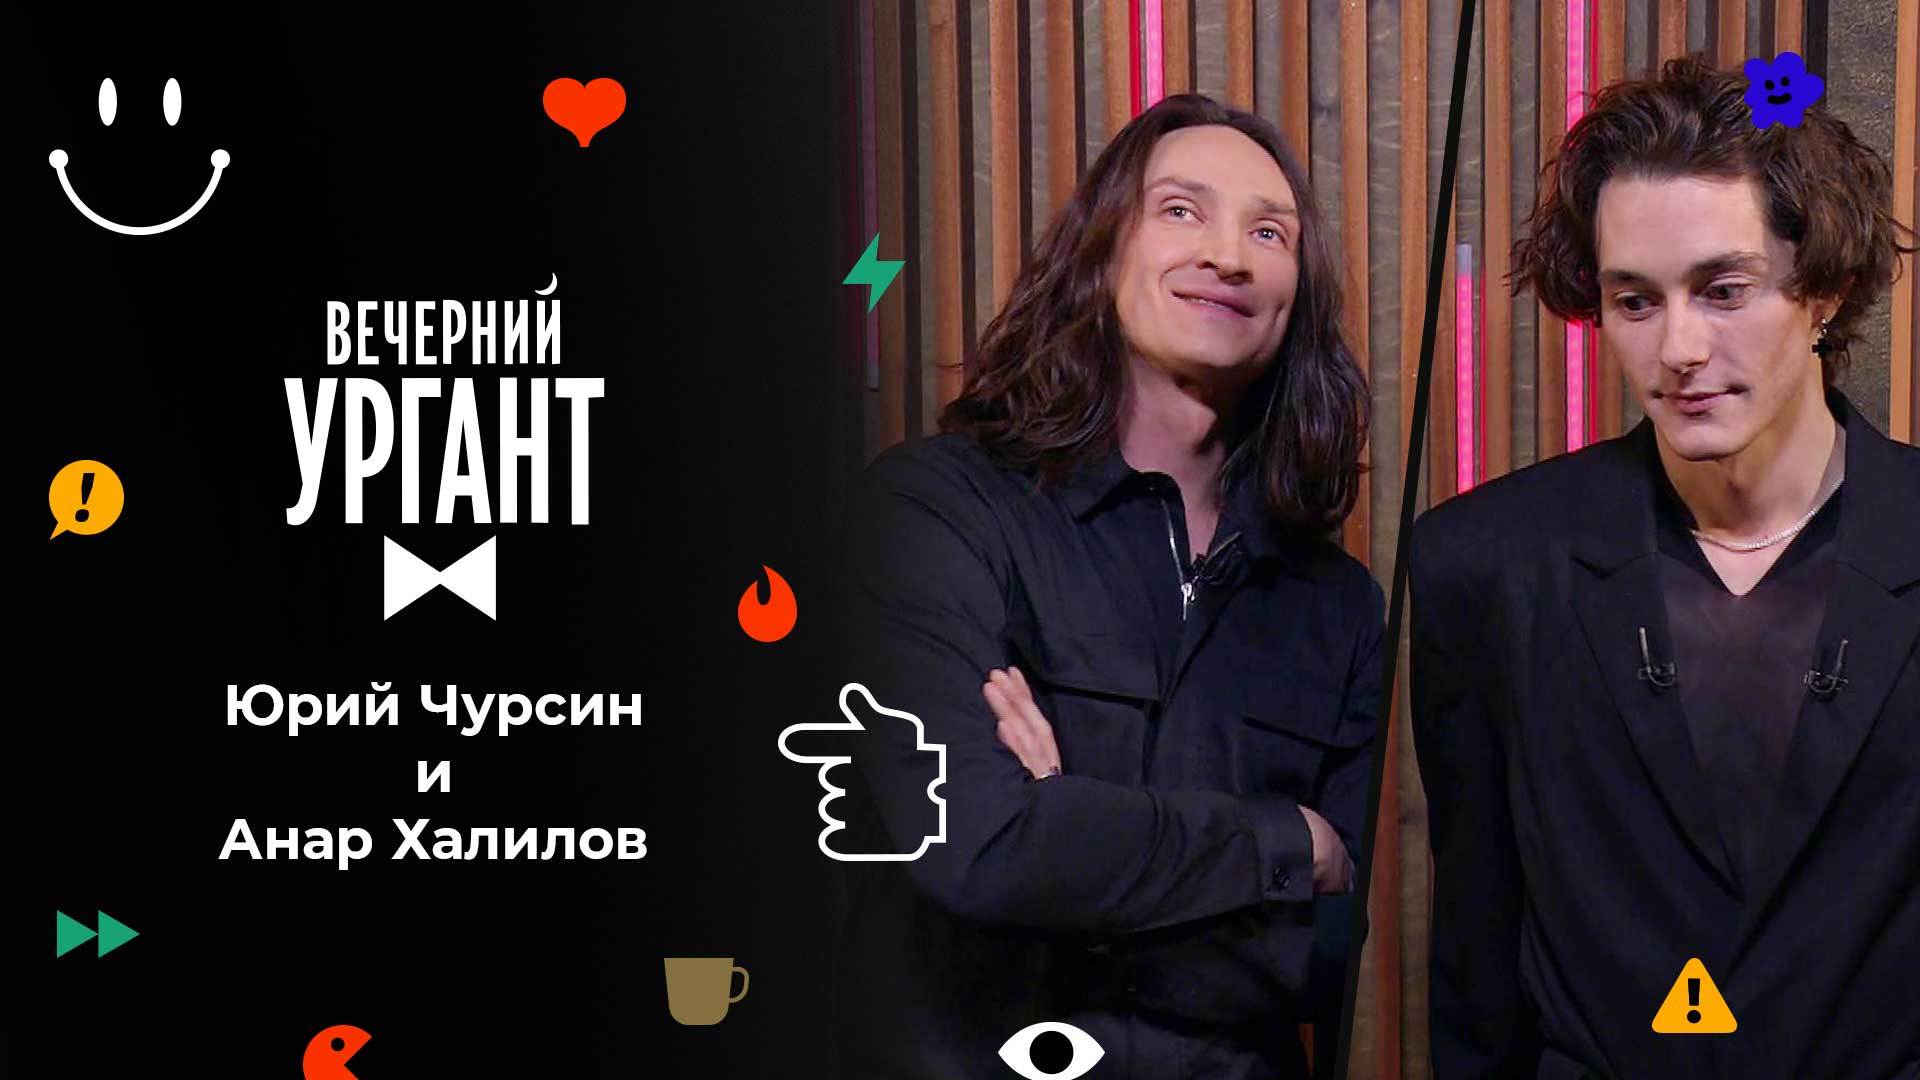 «Вечерний Ургант». Юрий Чурсин и Анар Халилов